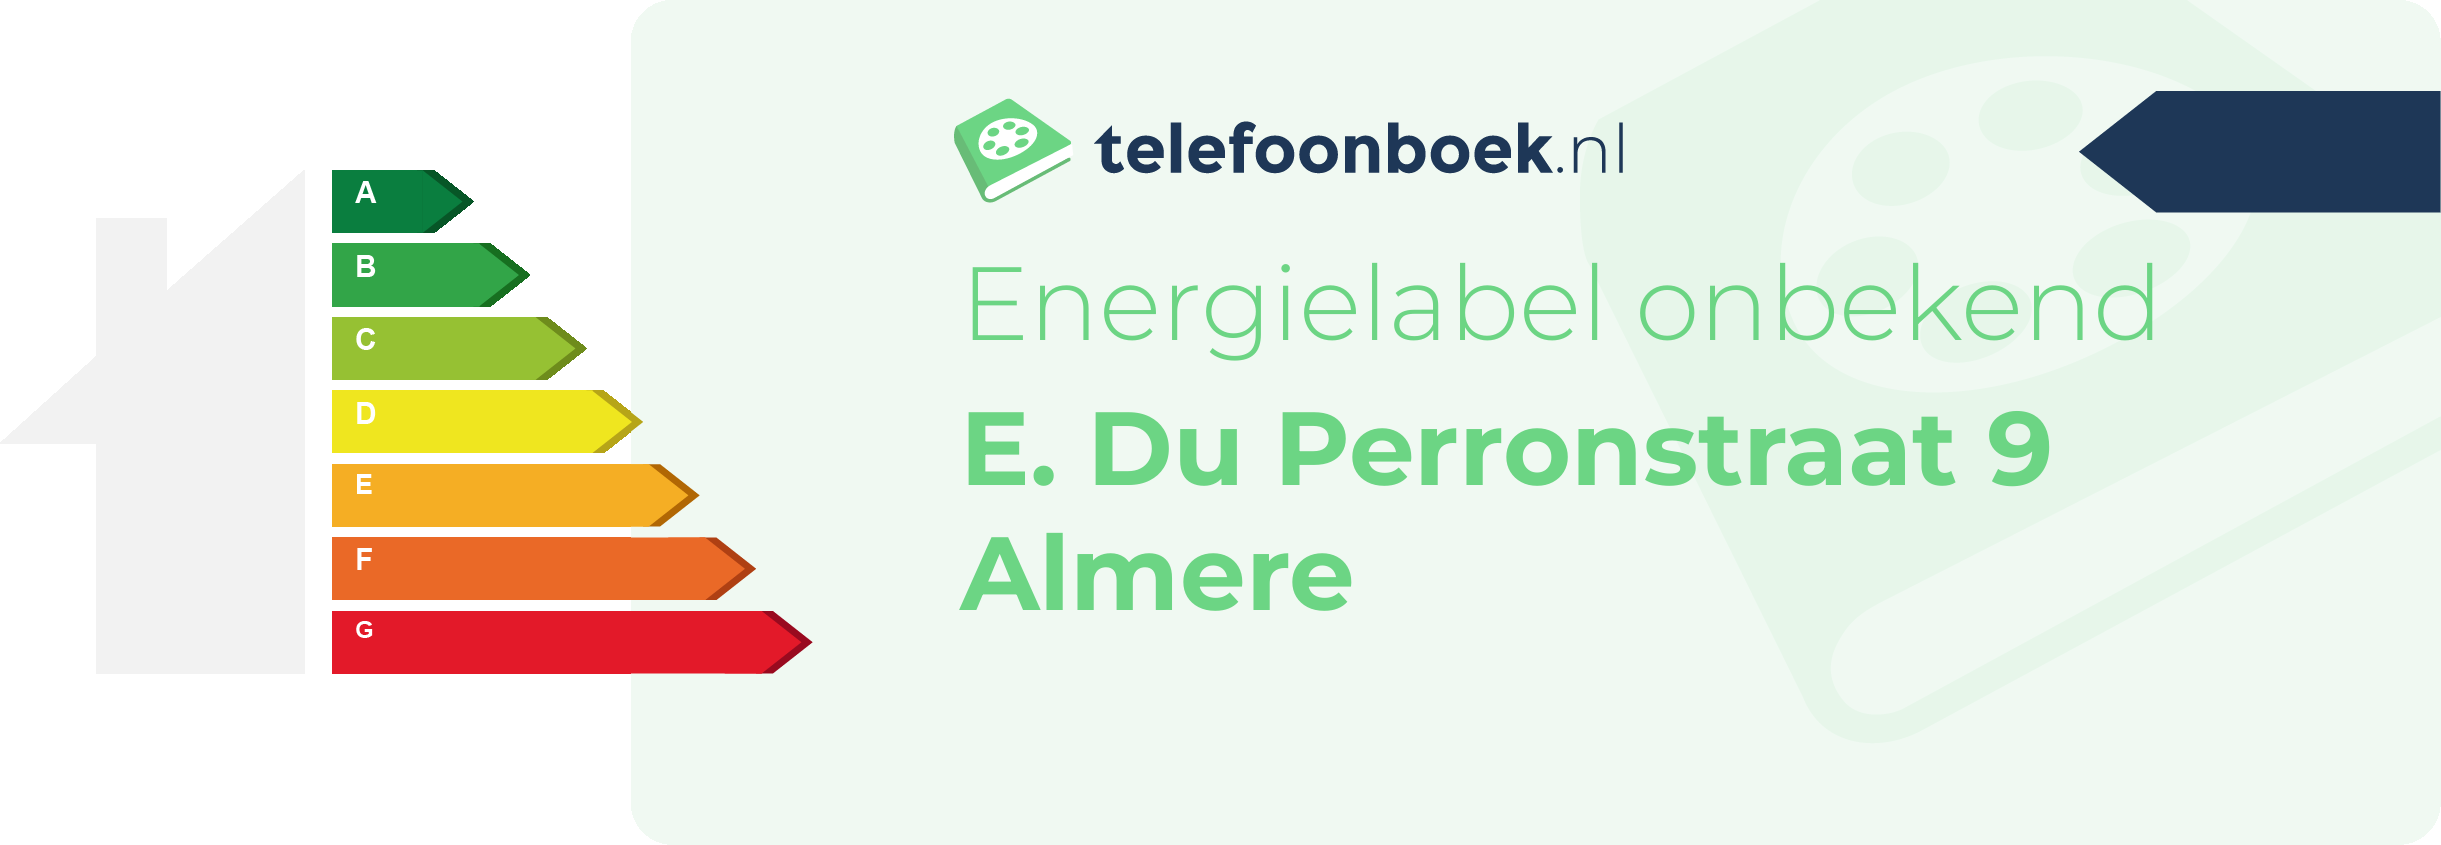 Energielabel E. Du Perronstraat 9 Almere